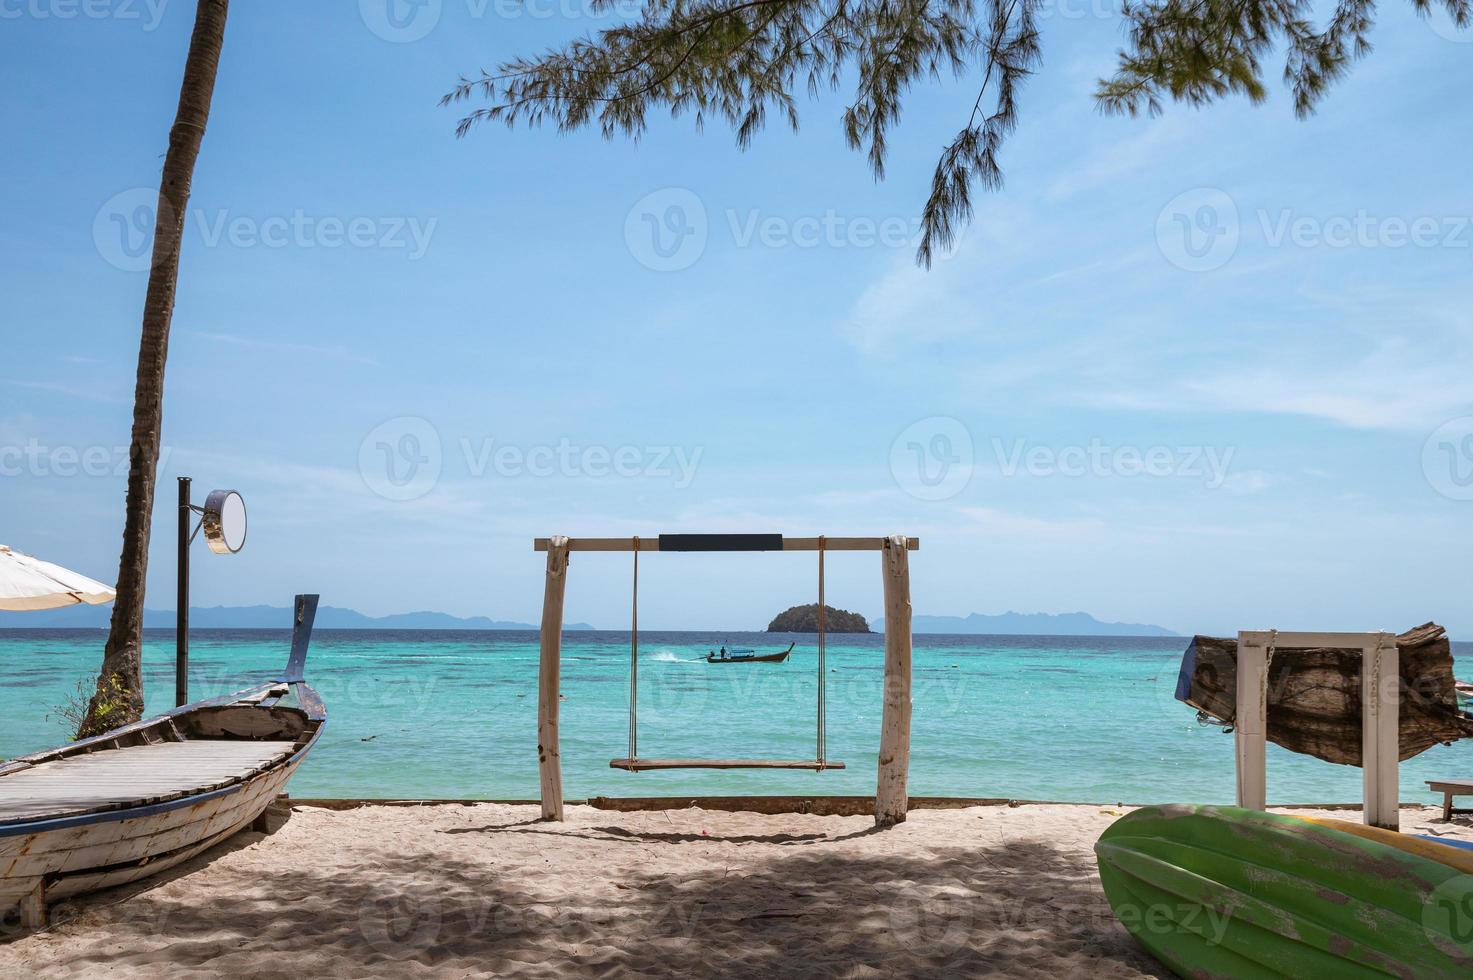 houten schommel op het strand met houten boot zeilen op tropische zee foto